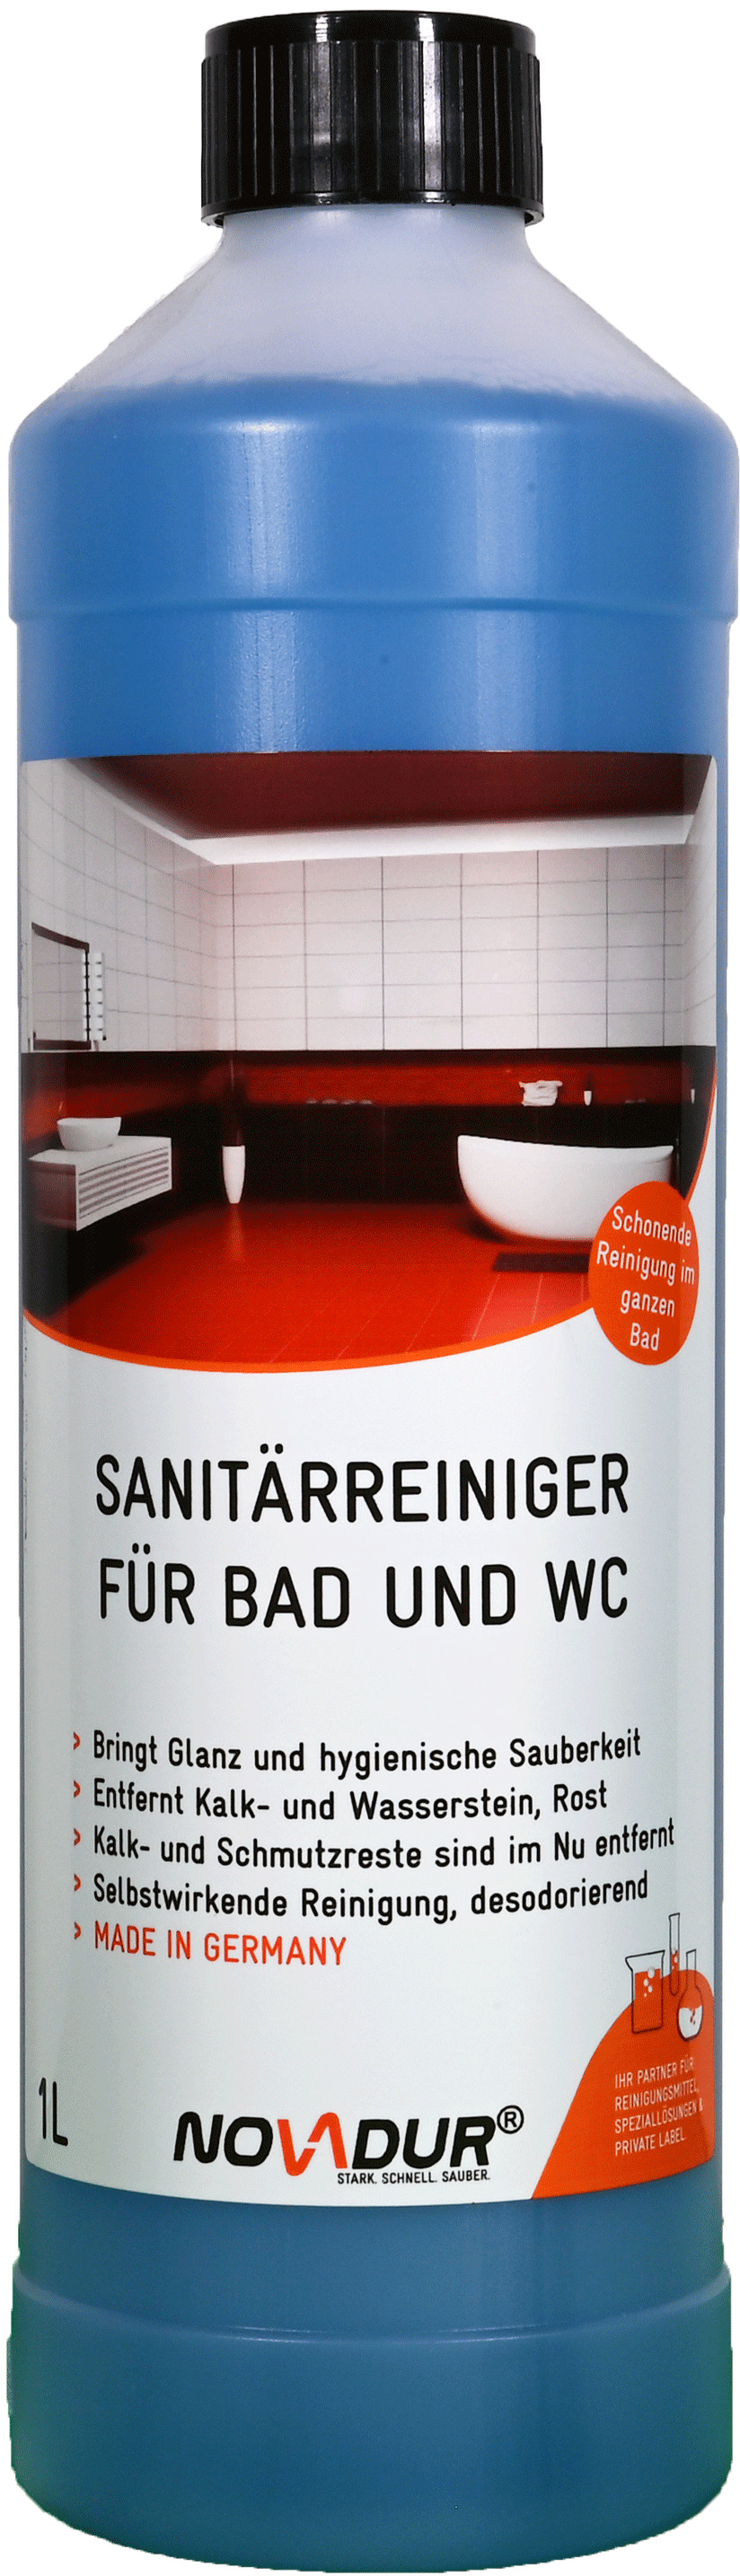 Sanitärreiniger für Bad und WC